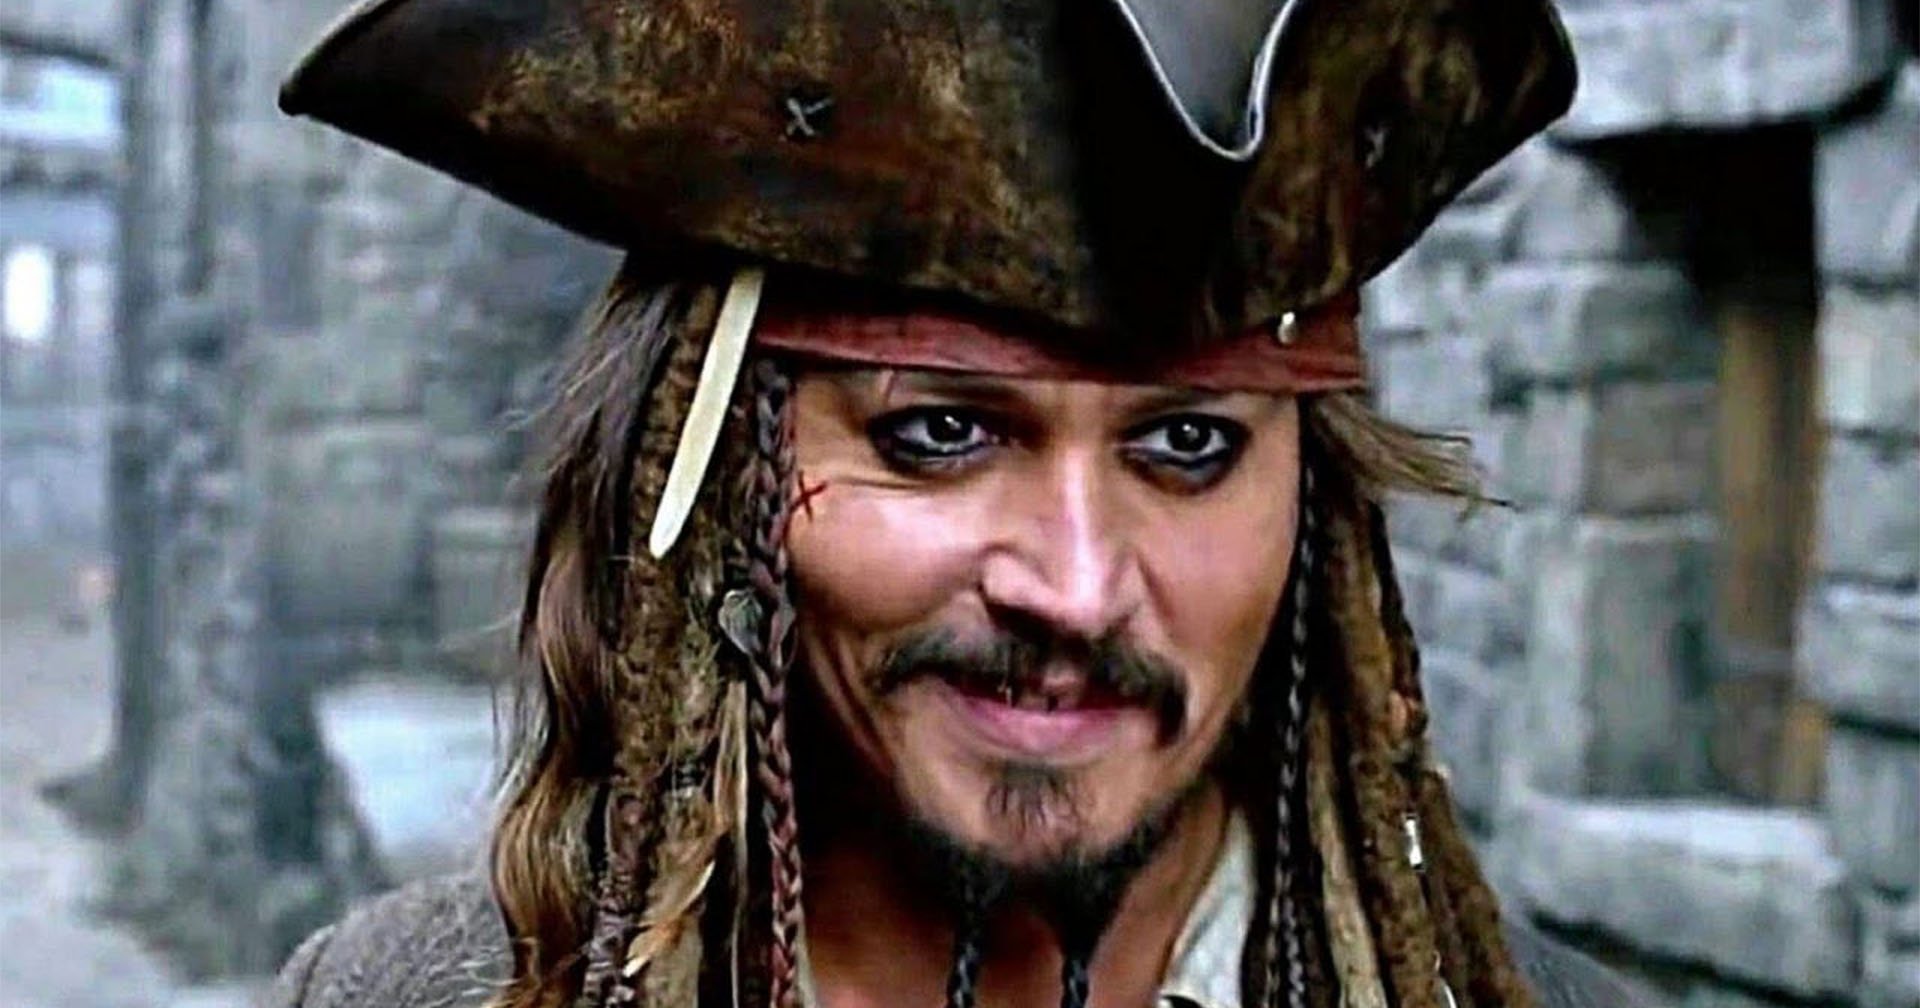 แฟน ๆ ยังคงเรียกร้องให้ดิสนีย์นำ Johnny Depp กลับมาเป็นกัปตันแจ็ก สแปร์โรว์ ใน Pirates of the Caribbean 6